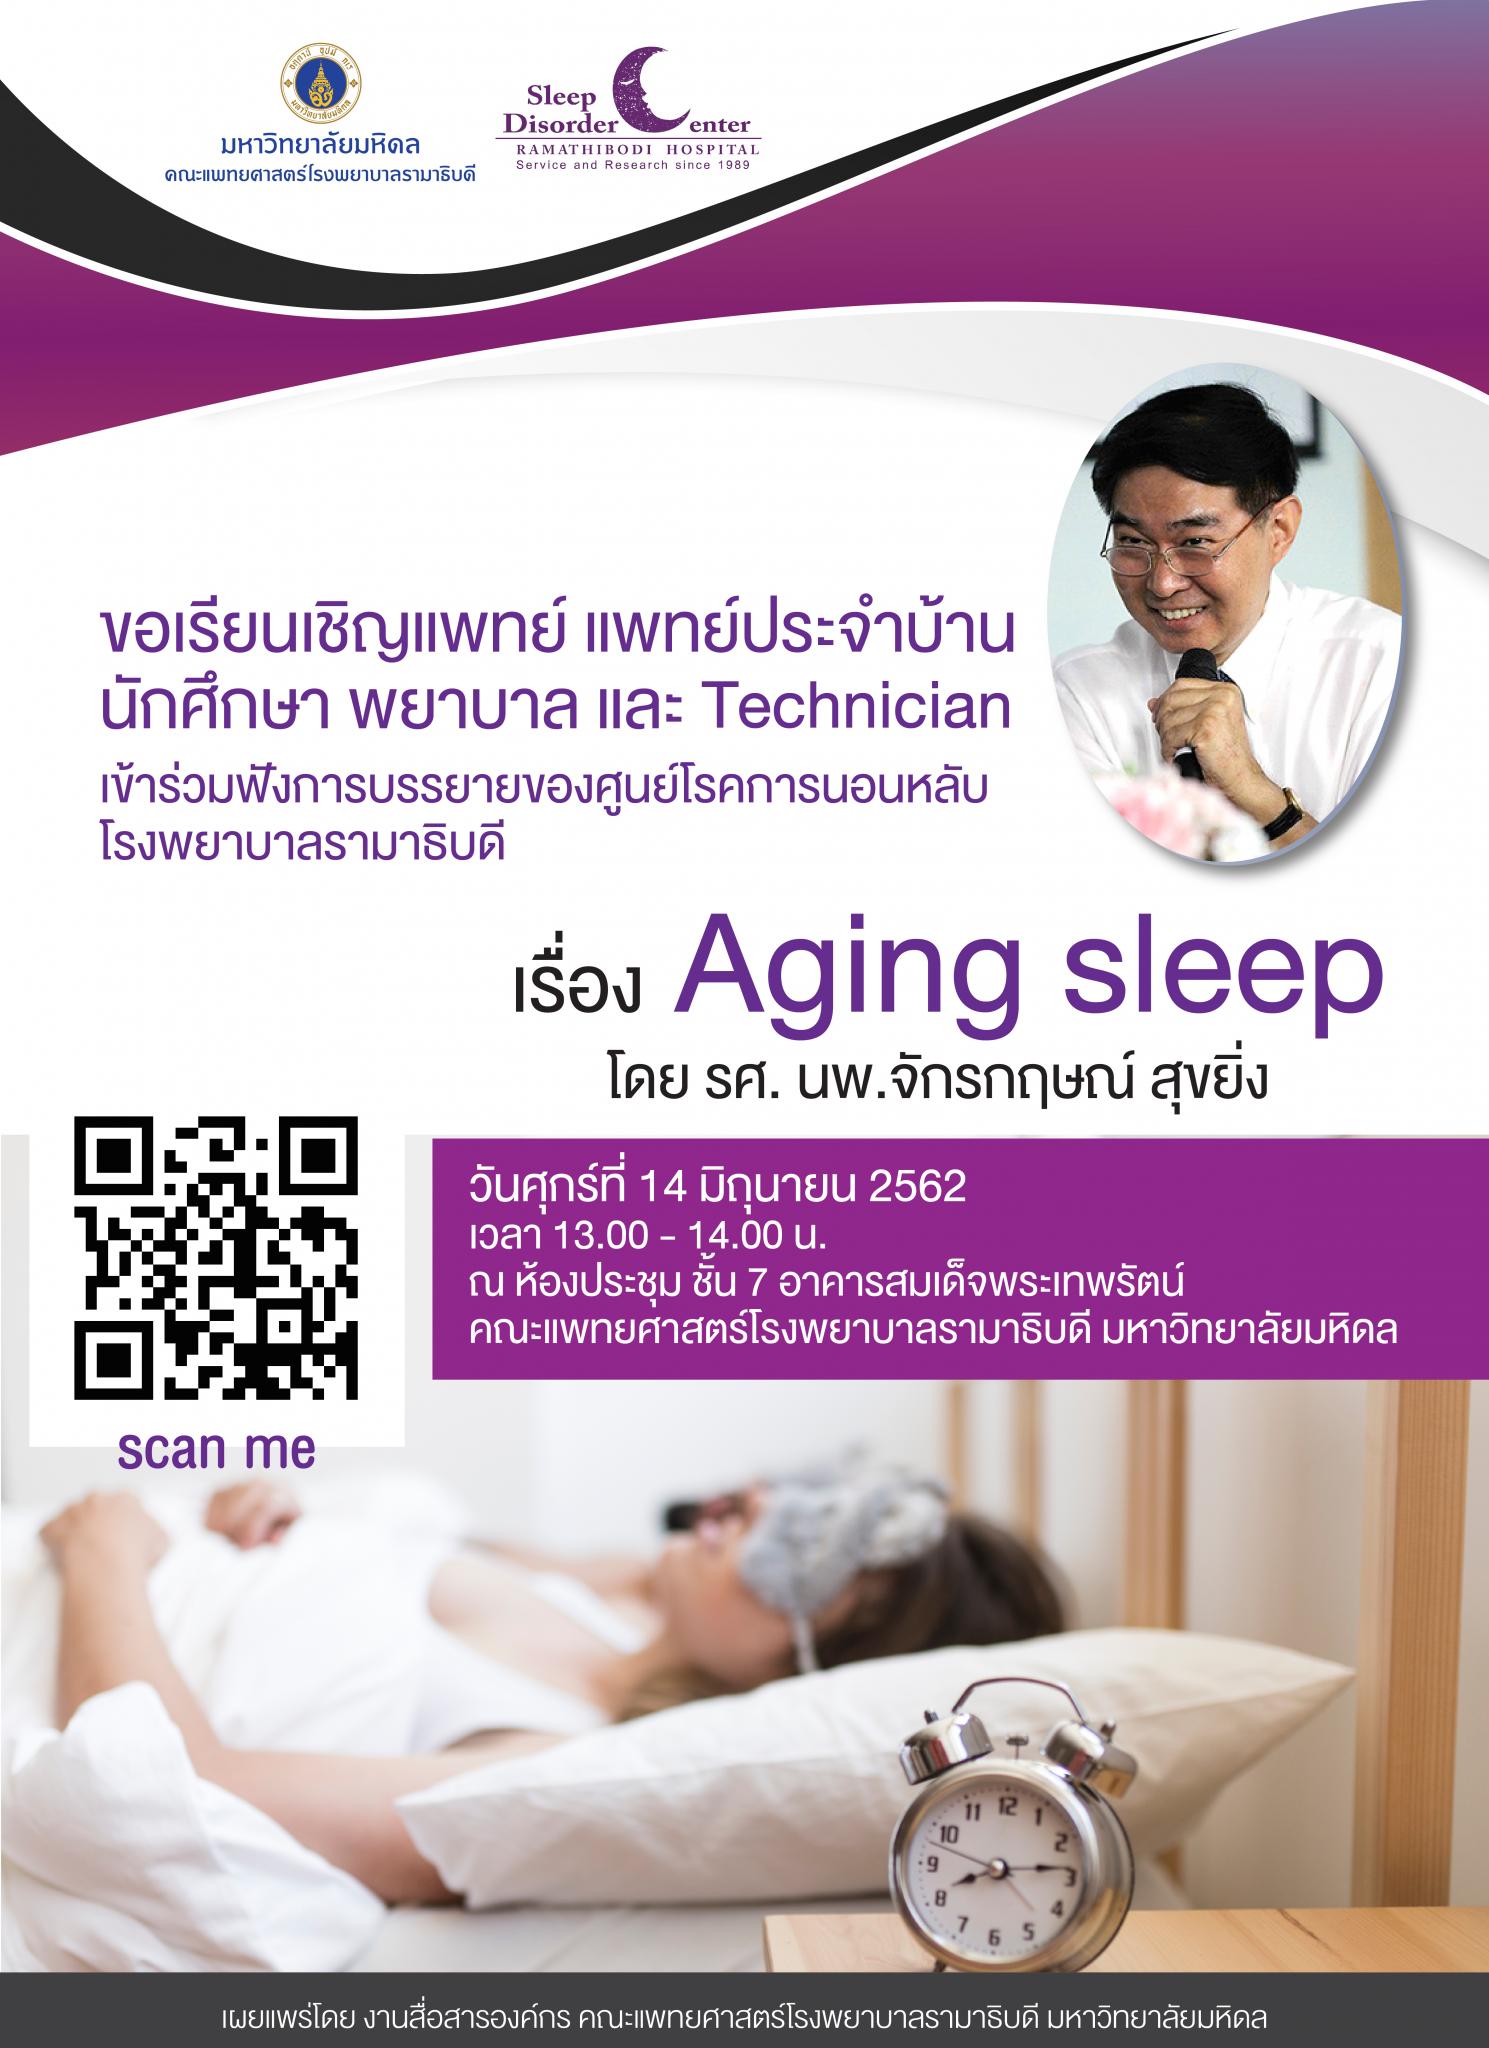 ขอเรียนเชิญแพทย์ แพทย์ประจำบ้าน นักศึกษา พยาบาล และ Technician เข้าร่วมฟังการบรรยายเรื่อง Aging sleep